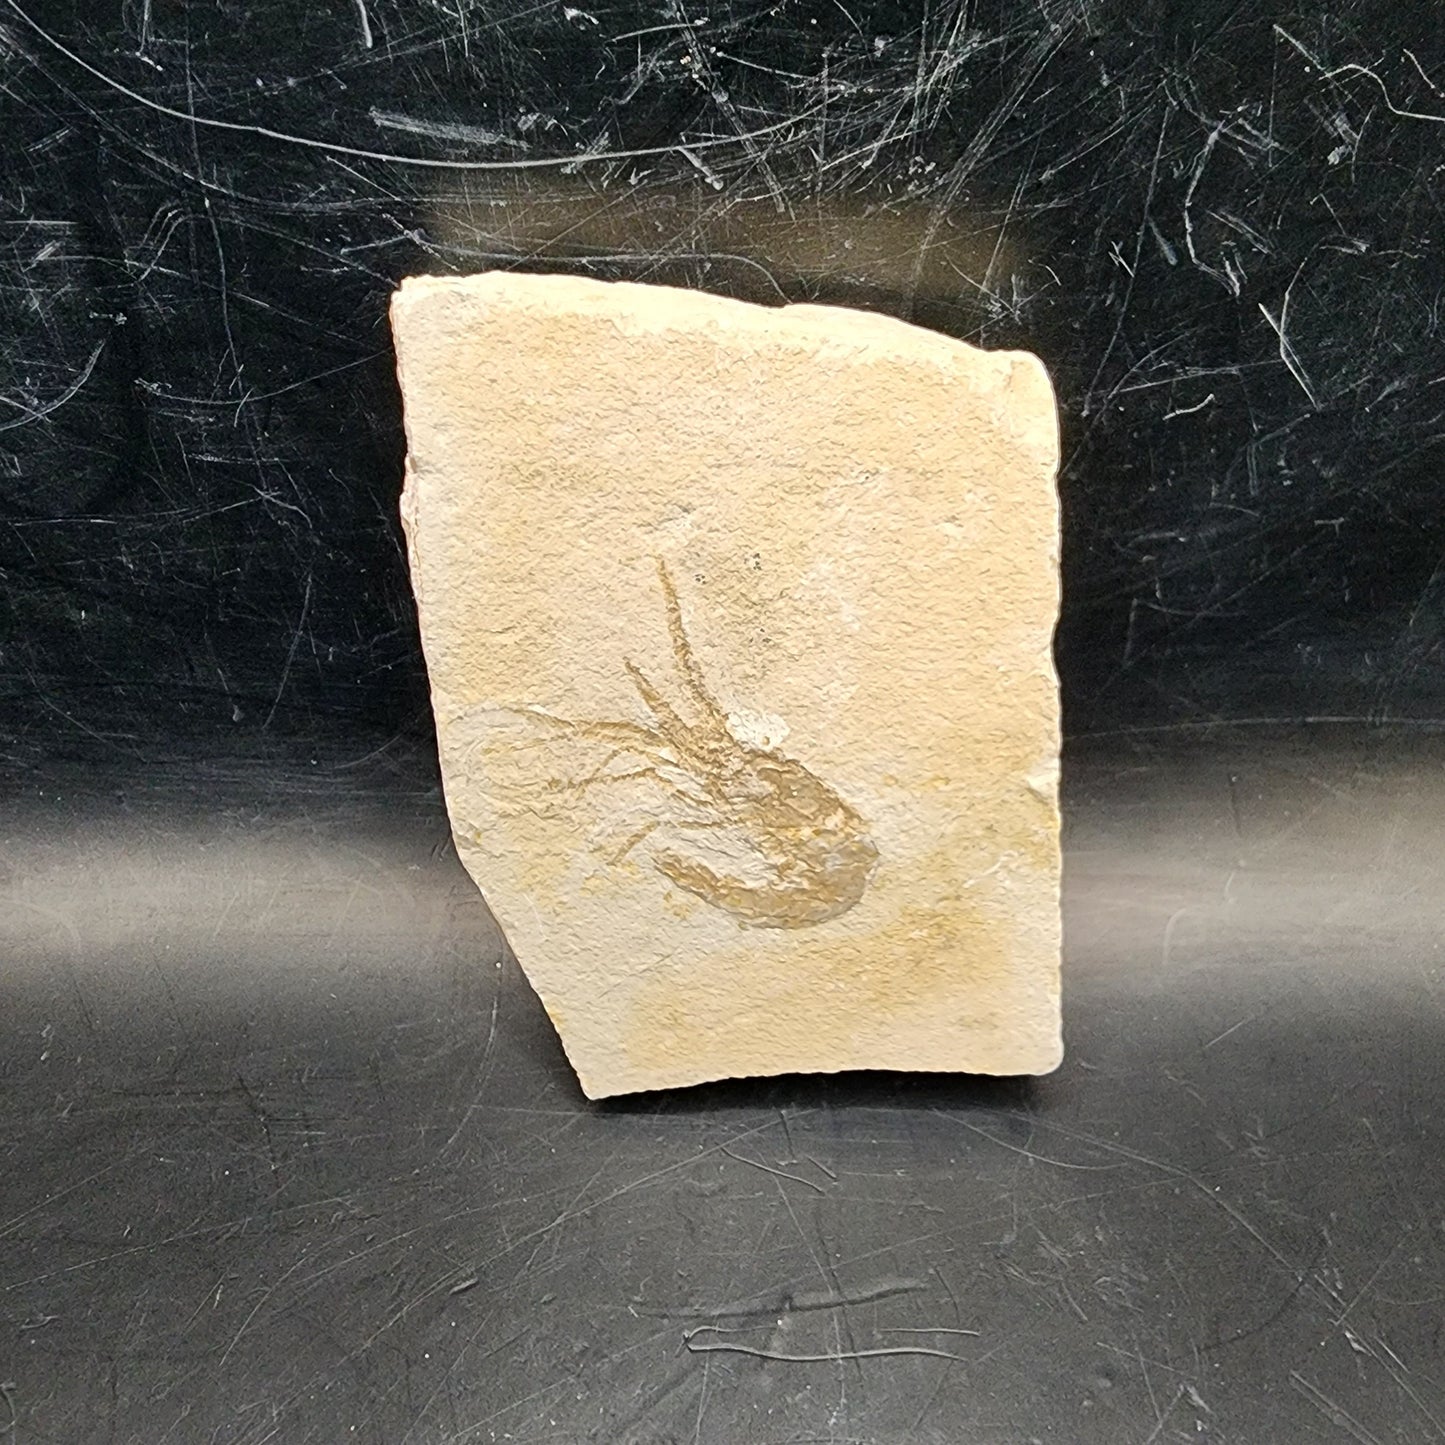 Striking Shrimp Fossil